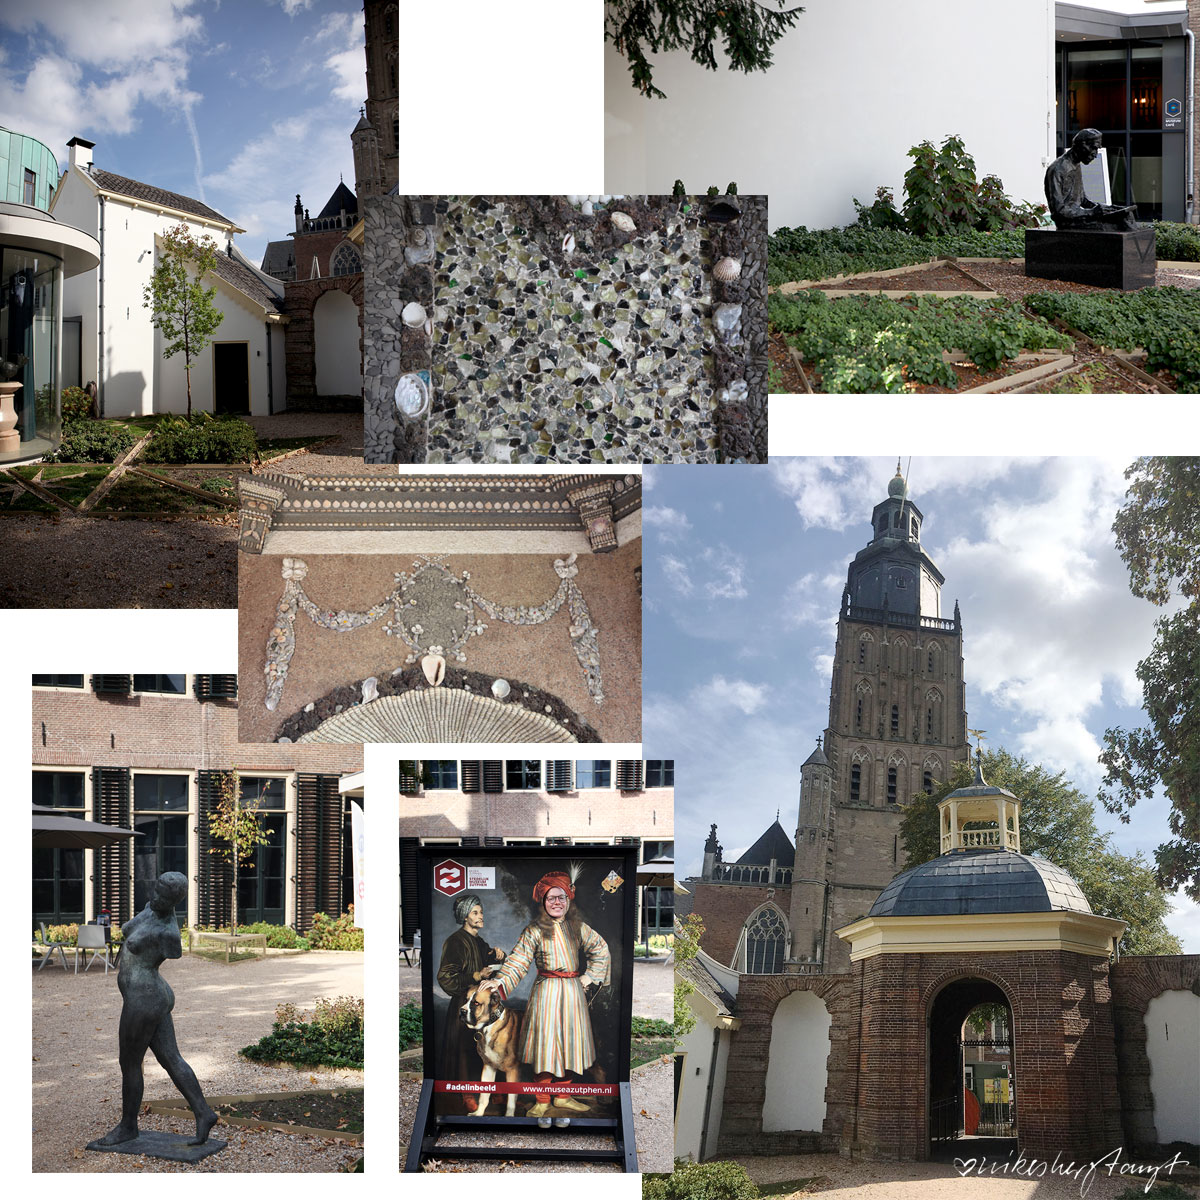 zutphen - hansestadt an der ijssel, ijessel, holland, niederlande, #ichhabdadiesesdingmitdenniederlanden